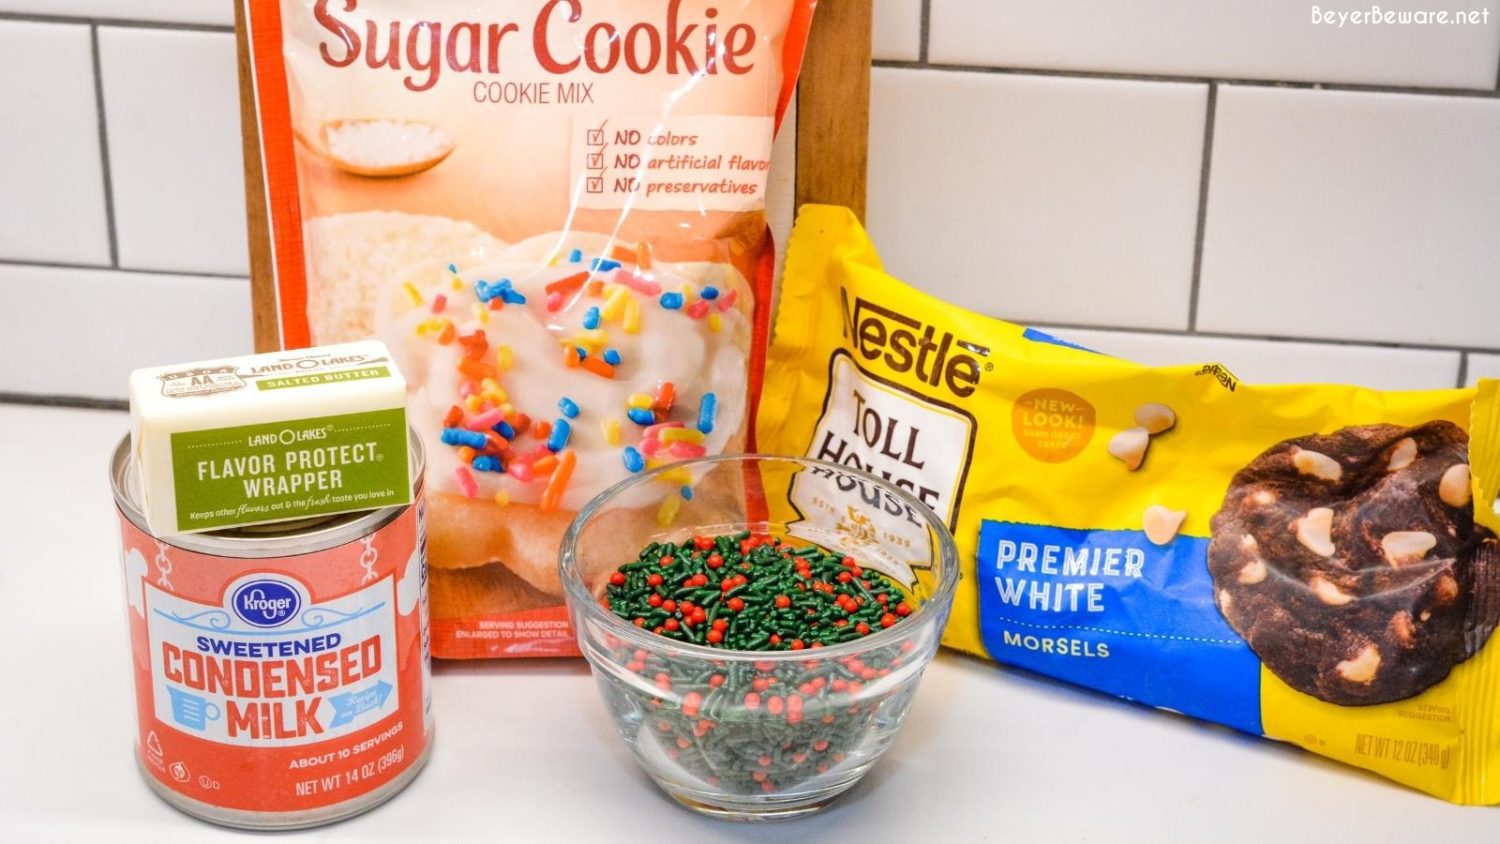 Sugar Cookie Fudge ingredients - White chocolate chips, sweetened condensed milk, butter, sugar cookie mix, sprinkles